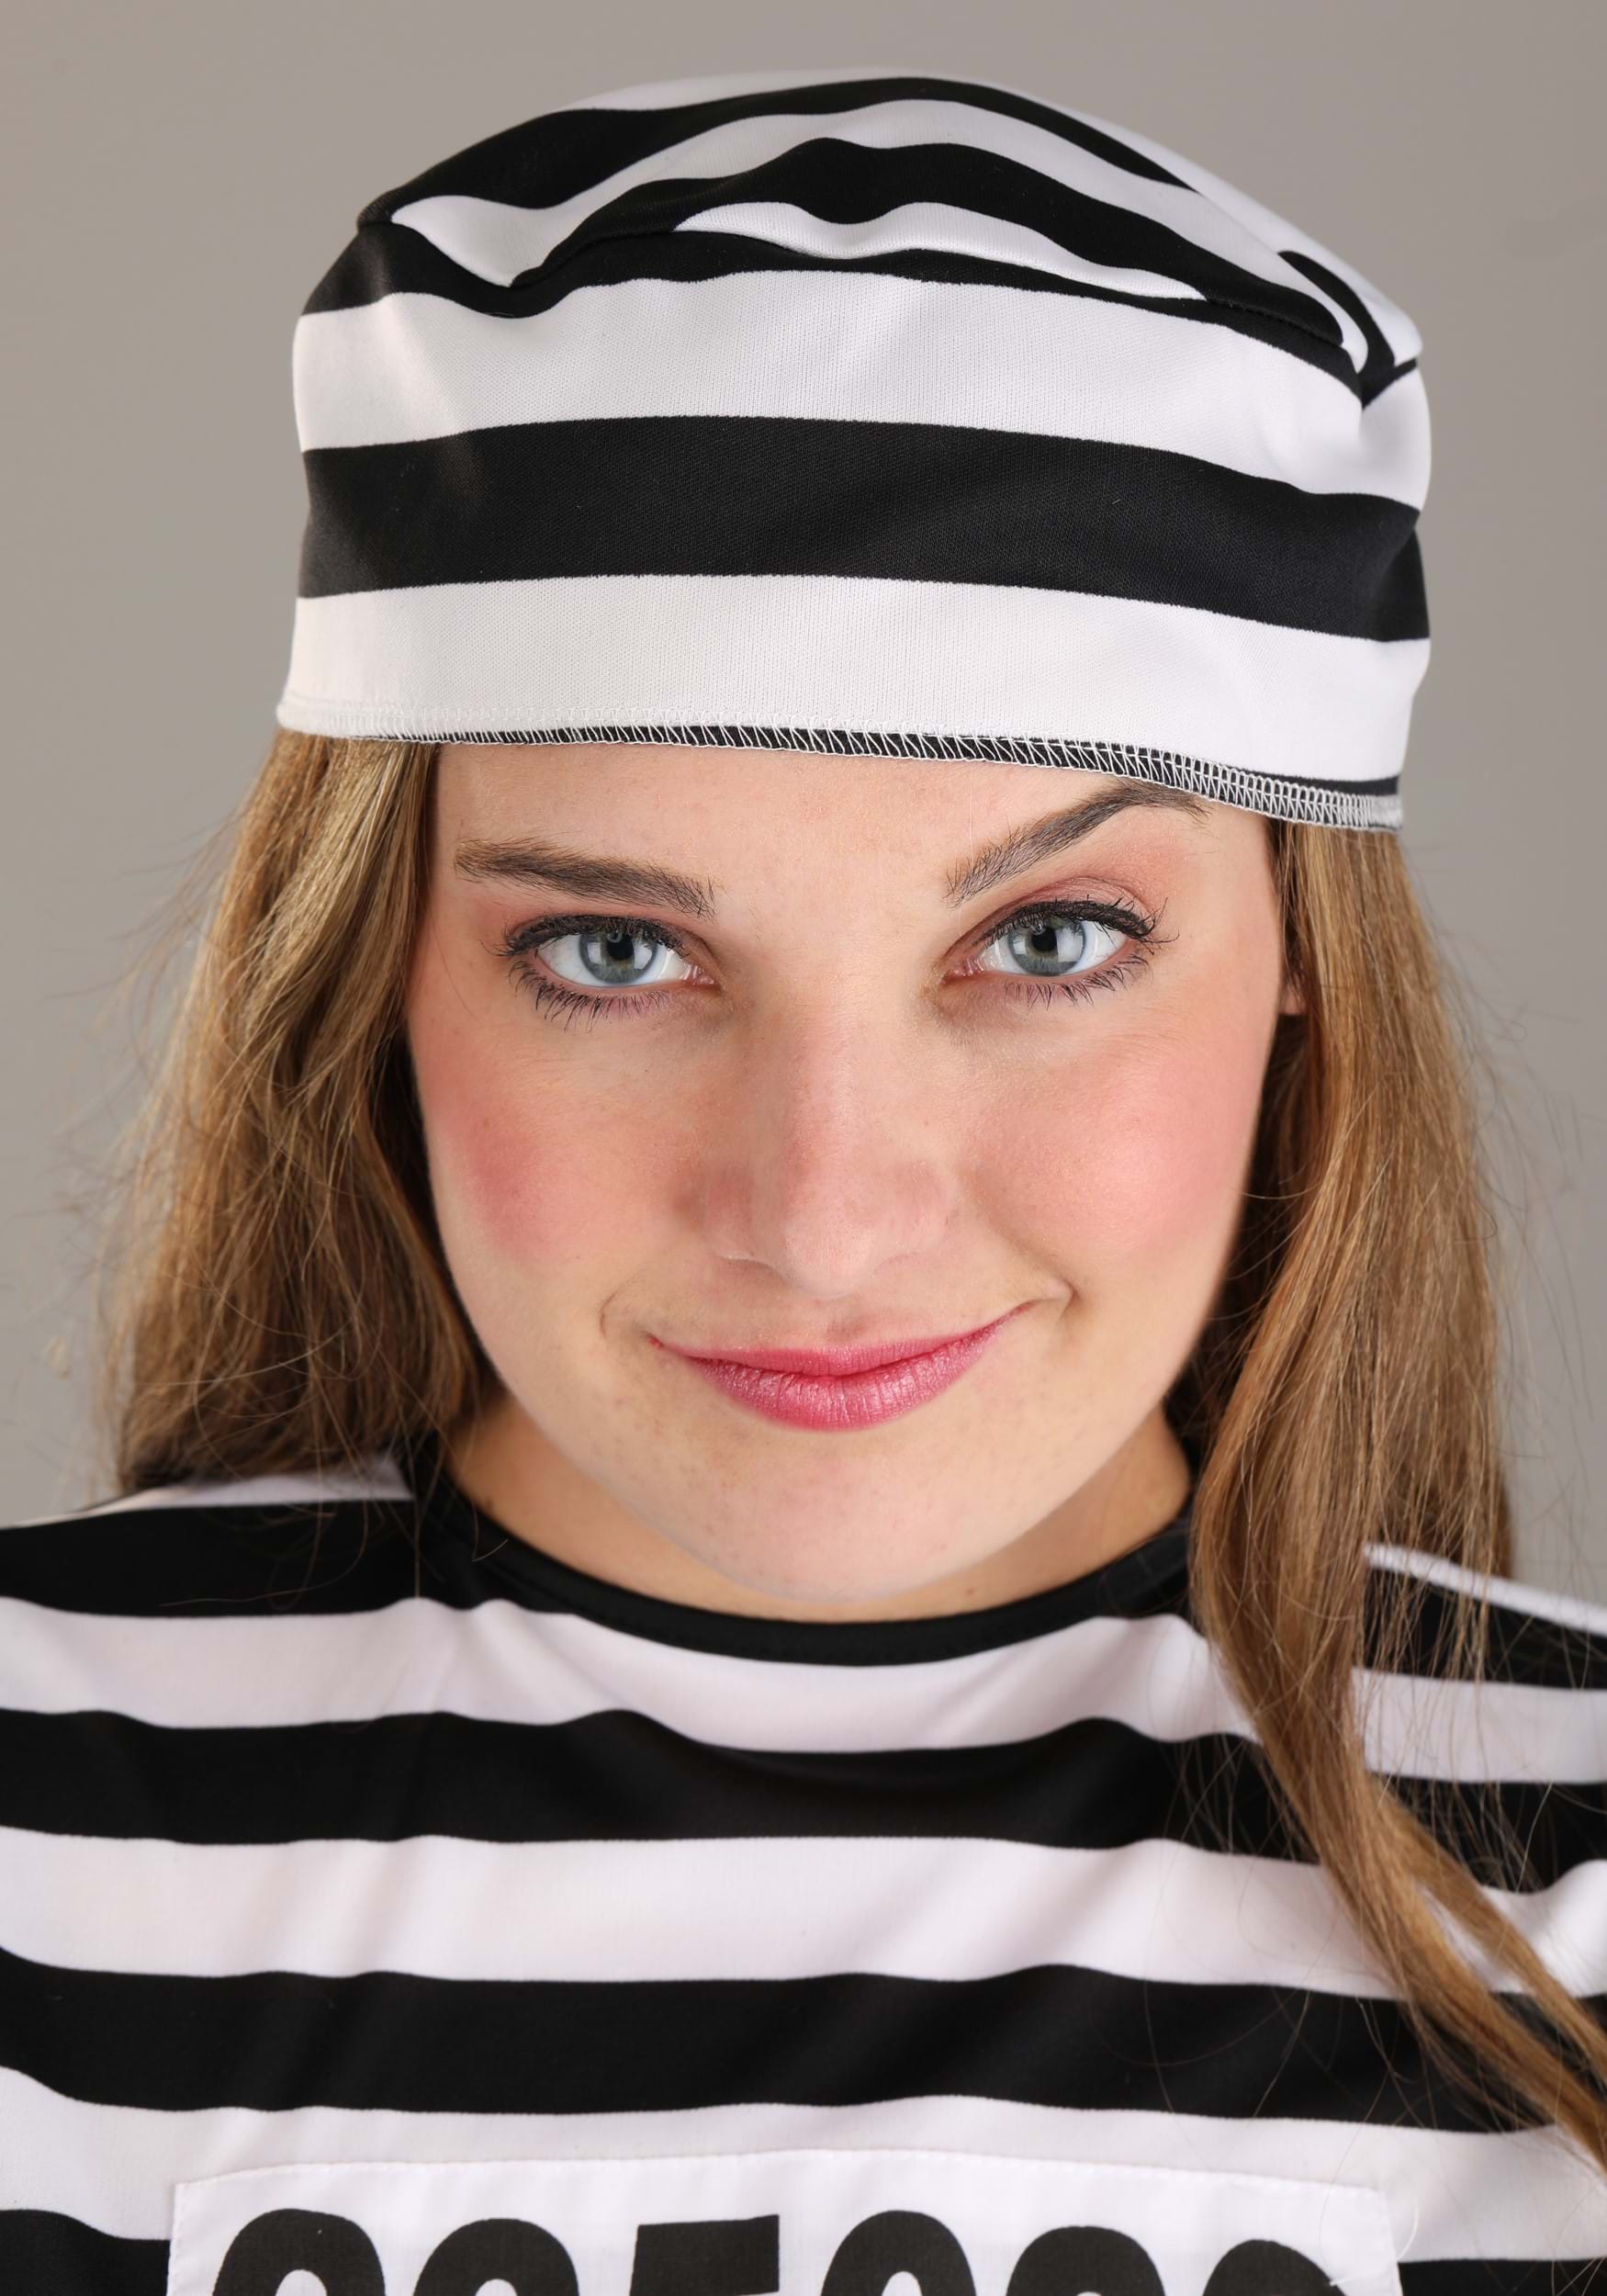 Women's Striped Prisoner Fancy Dress Costume , Jailbird Women's Fancy Dress Costume